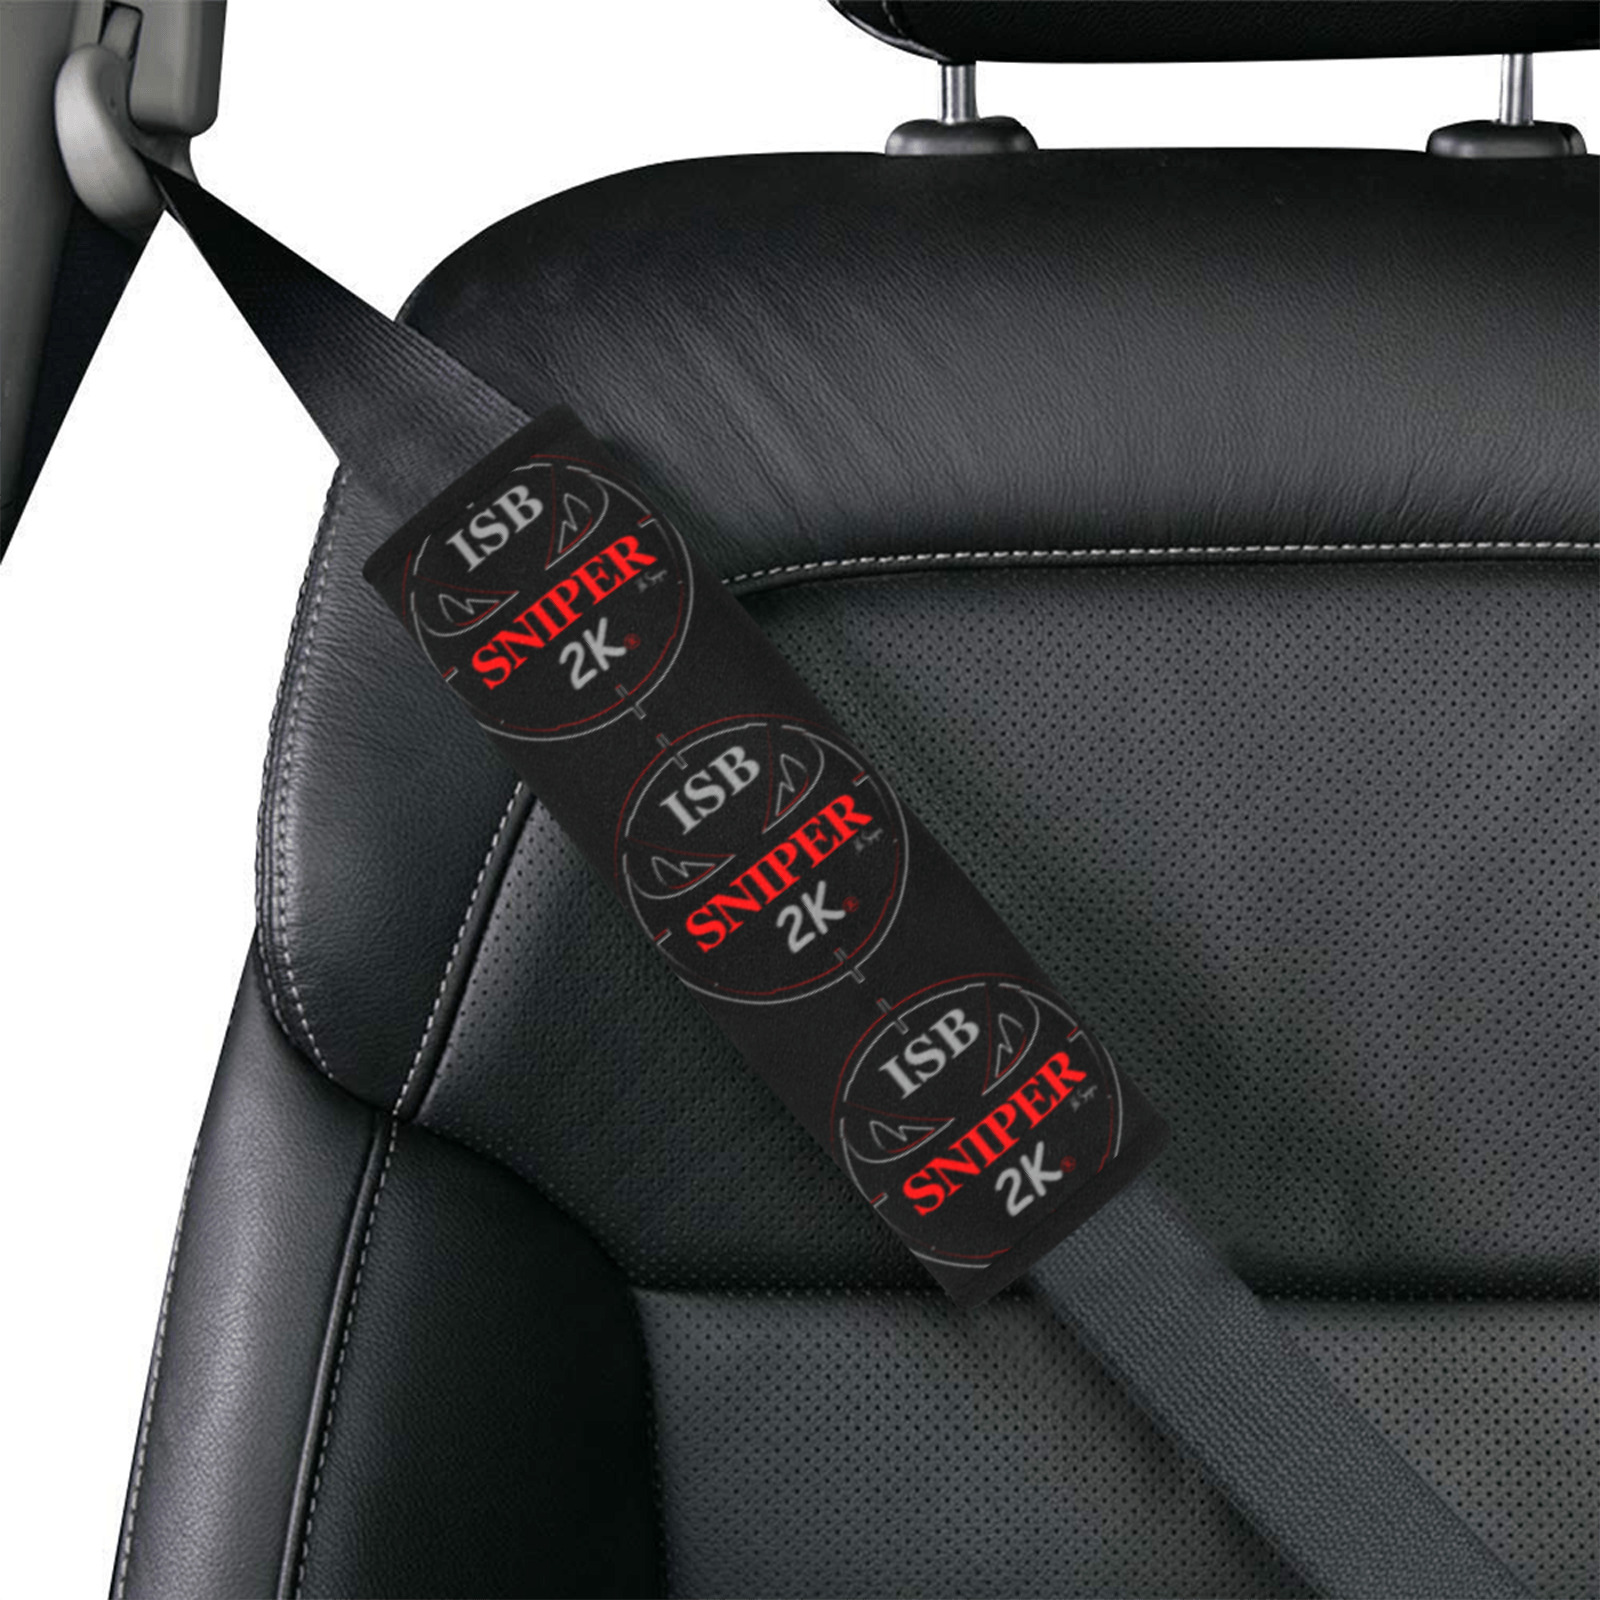 sniper2k-car seat belt Car Seat Belt Cover 7''x8.5'' (Pack of 2)